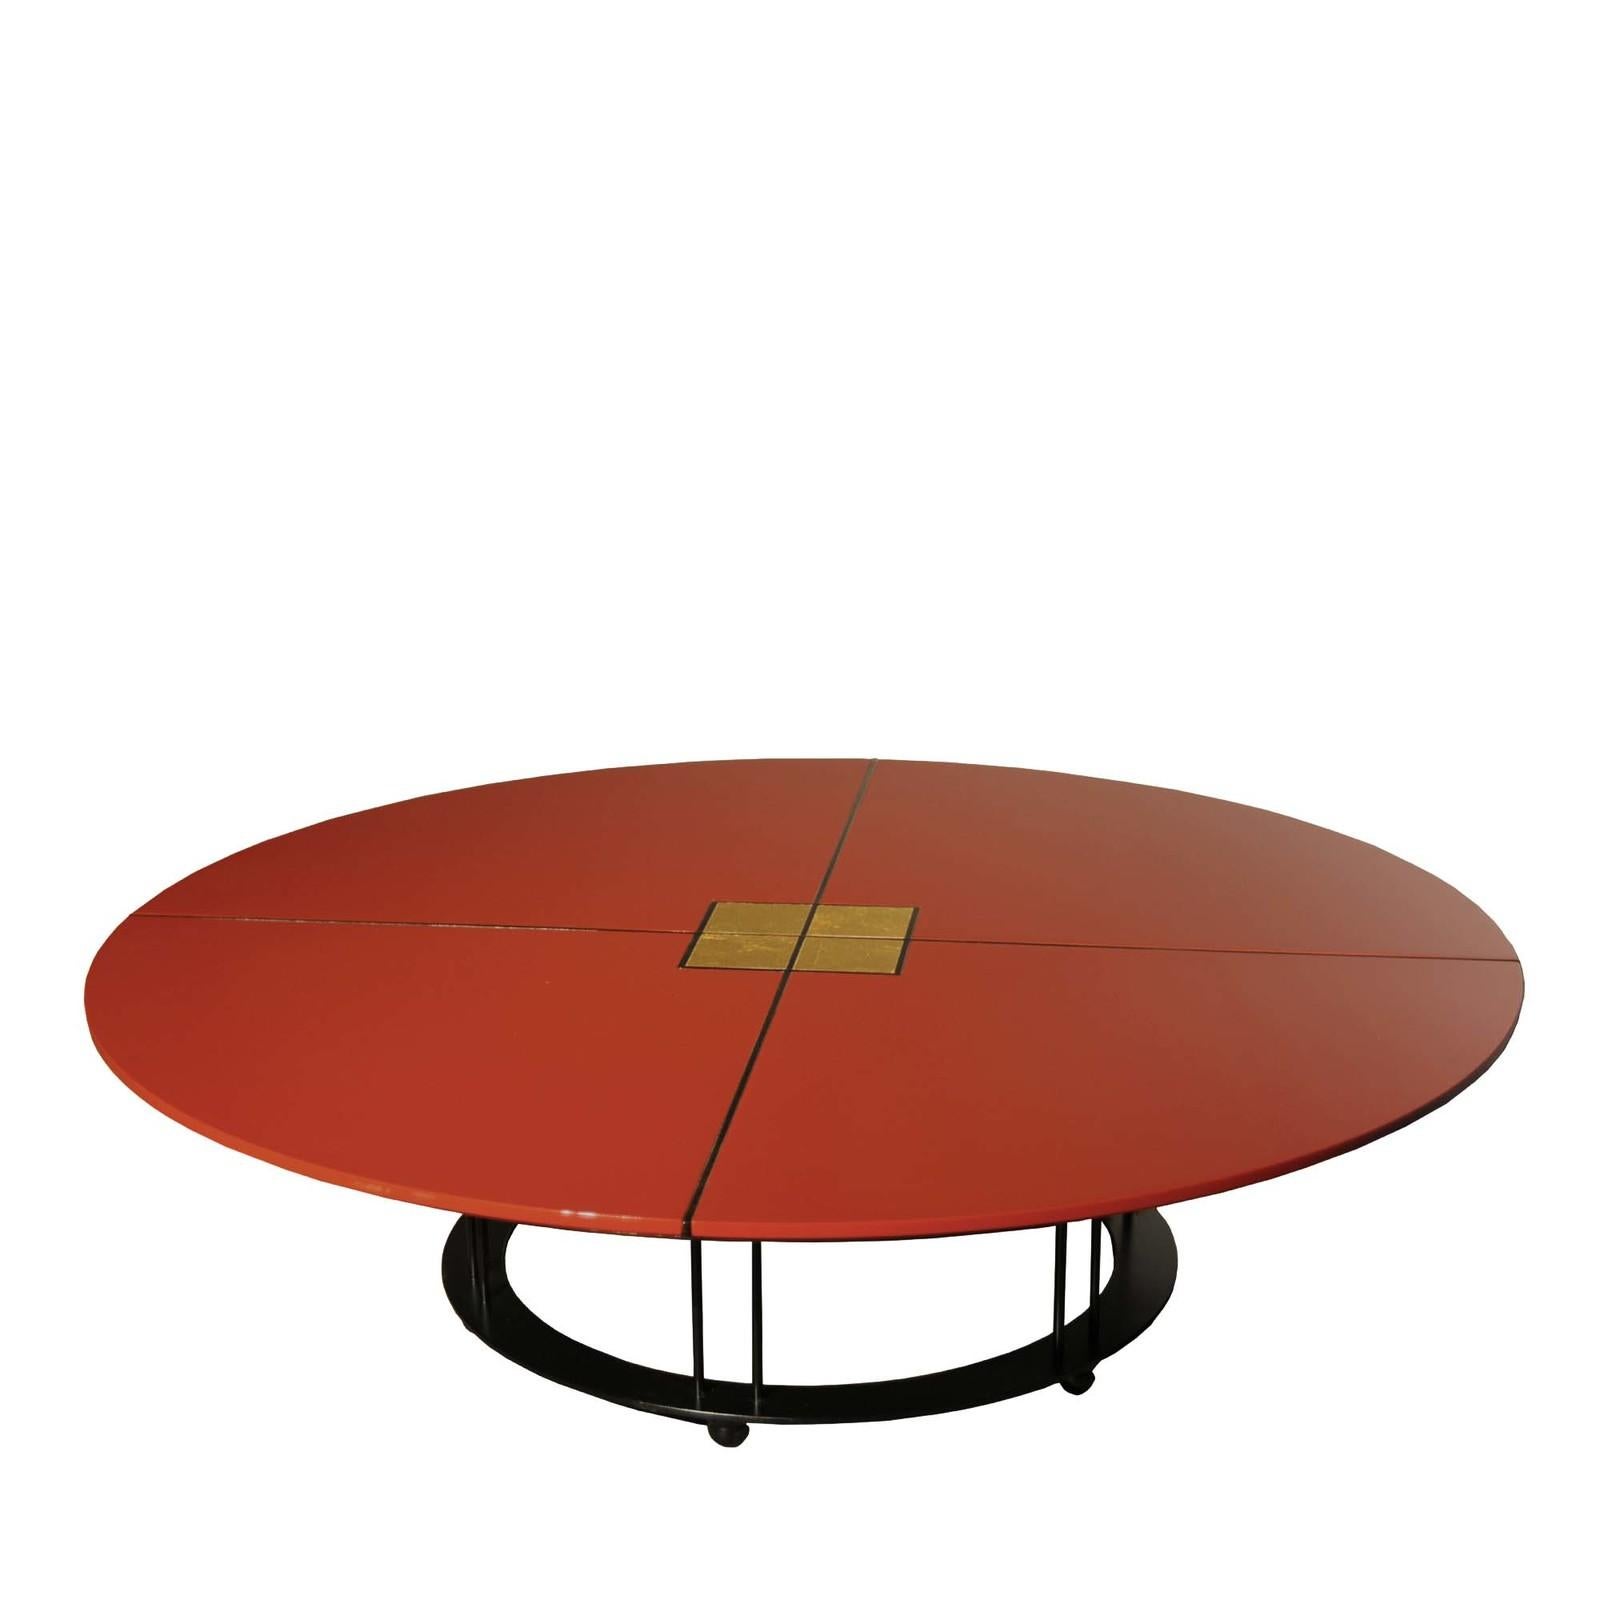 Pleine d'attrait pour le milieu du siècle et le minimalisme, cette table basse présente un profil géométrique avec un plateau en bois laqué en polyuréthane rouge brillant, soutenu par trois courts pieds en colonne ouverte fixés à une base circulaire